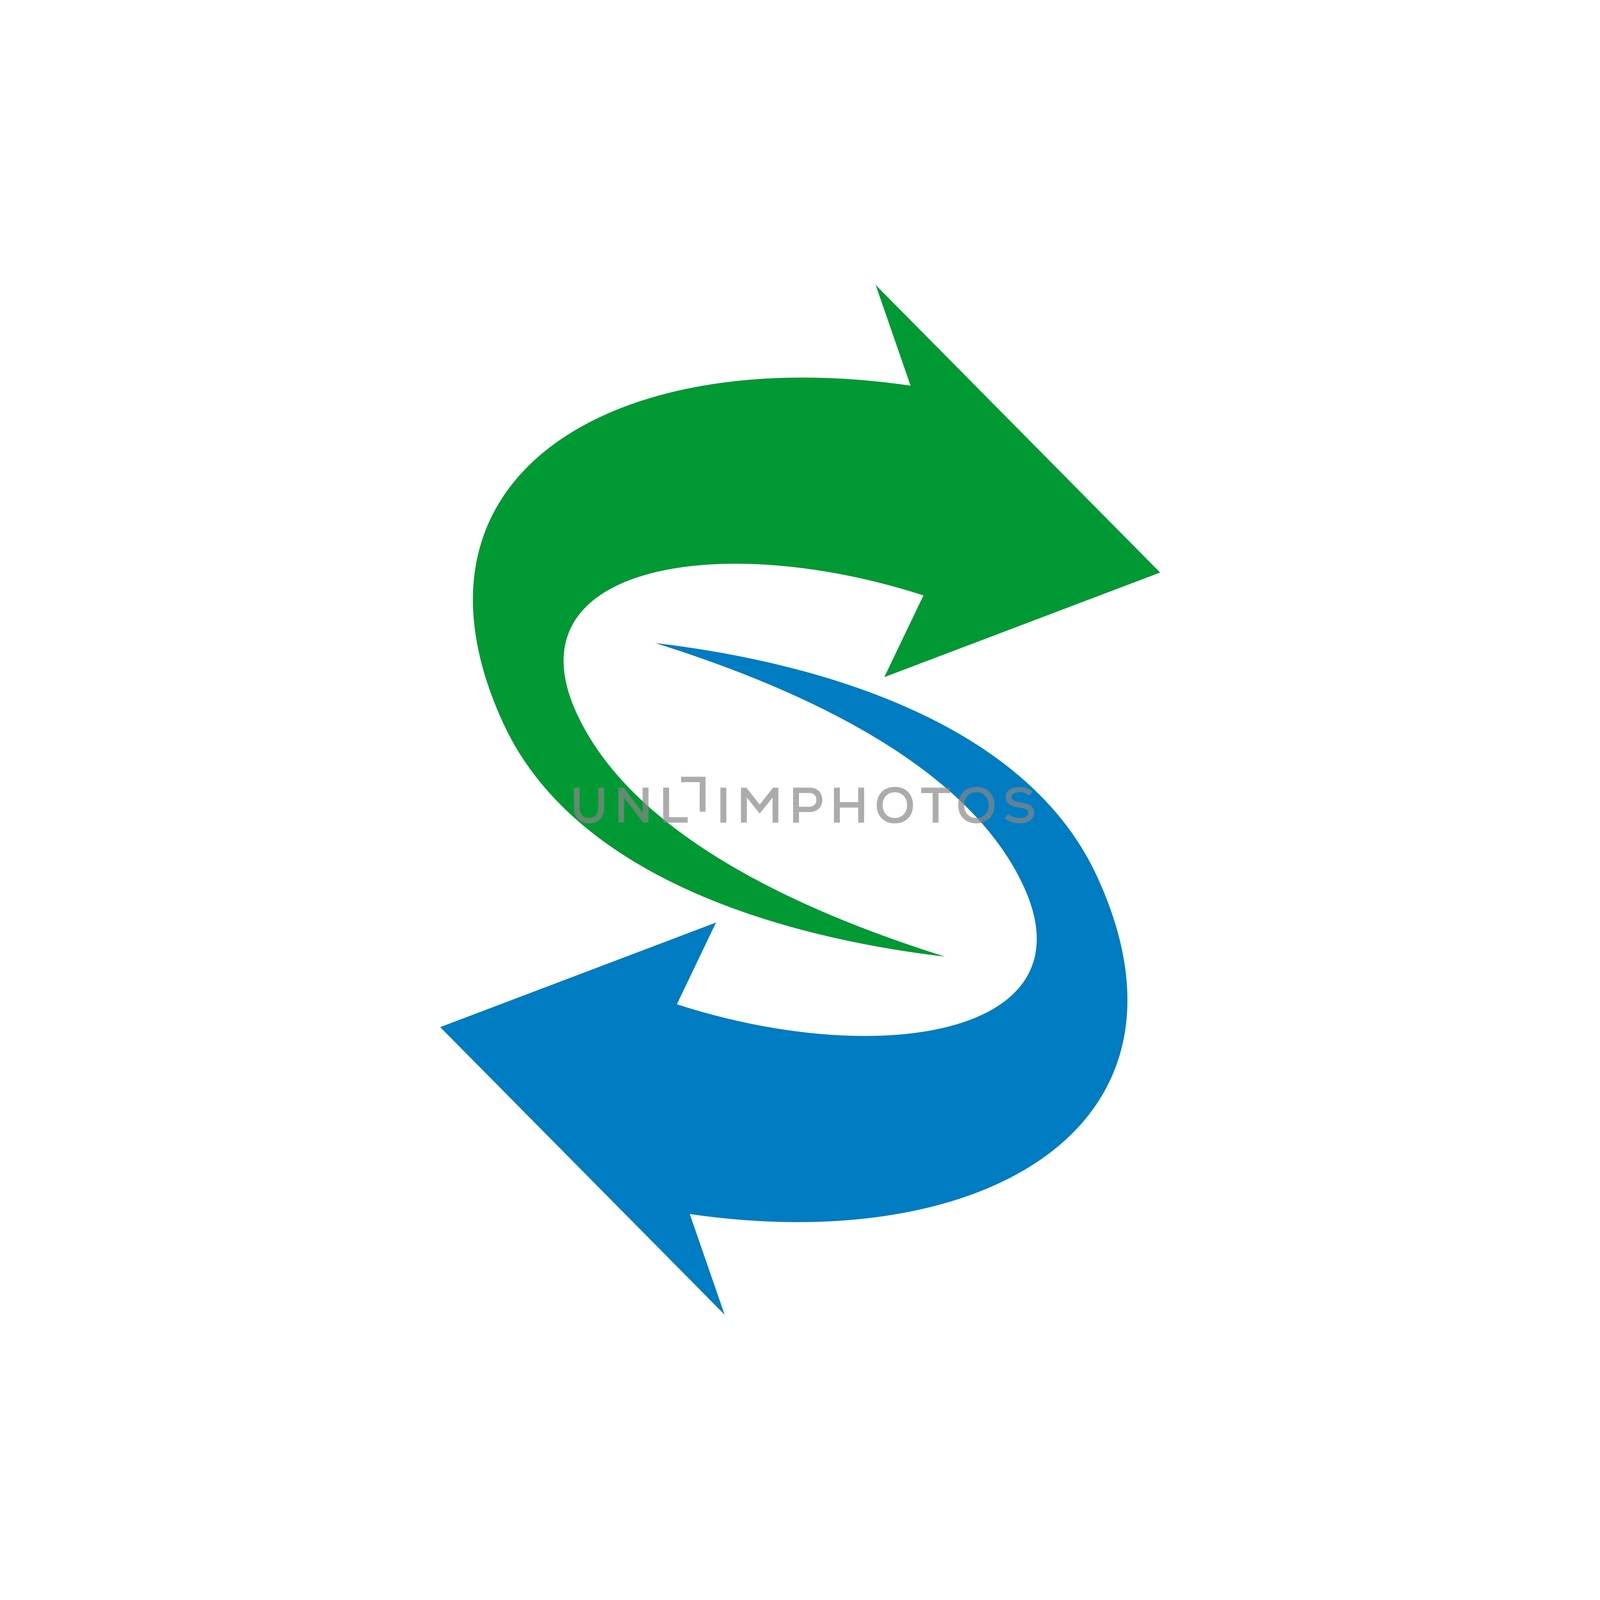 S Letter Arrow Logo Template Illustration Design. Vector EPS 10.